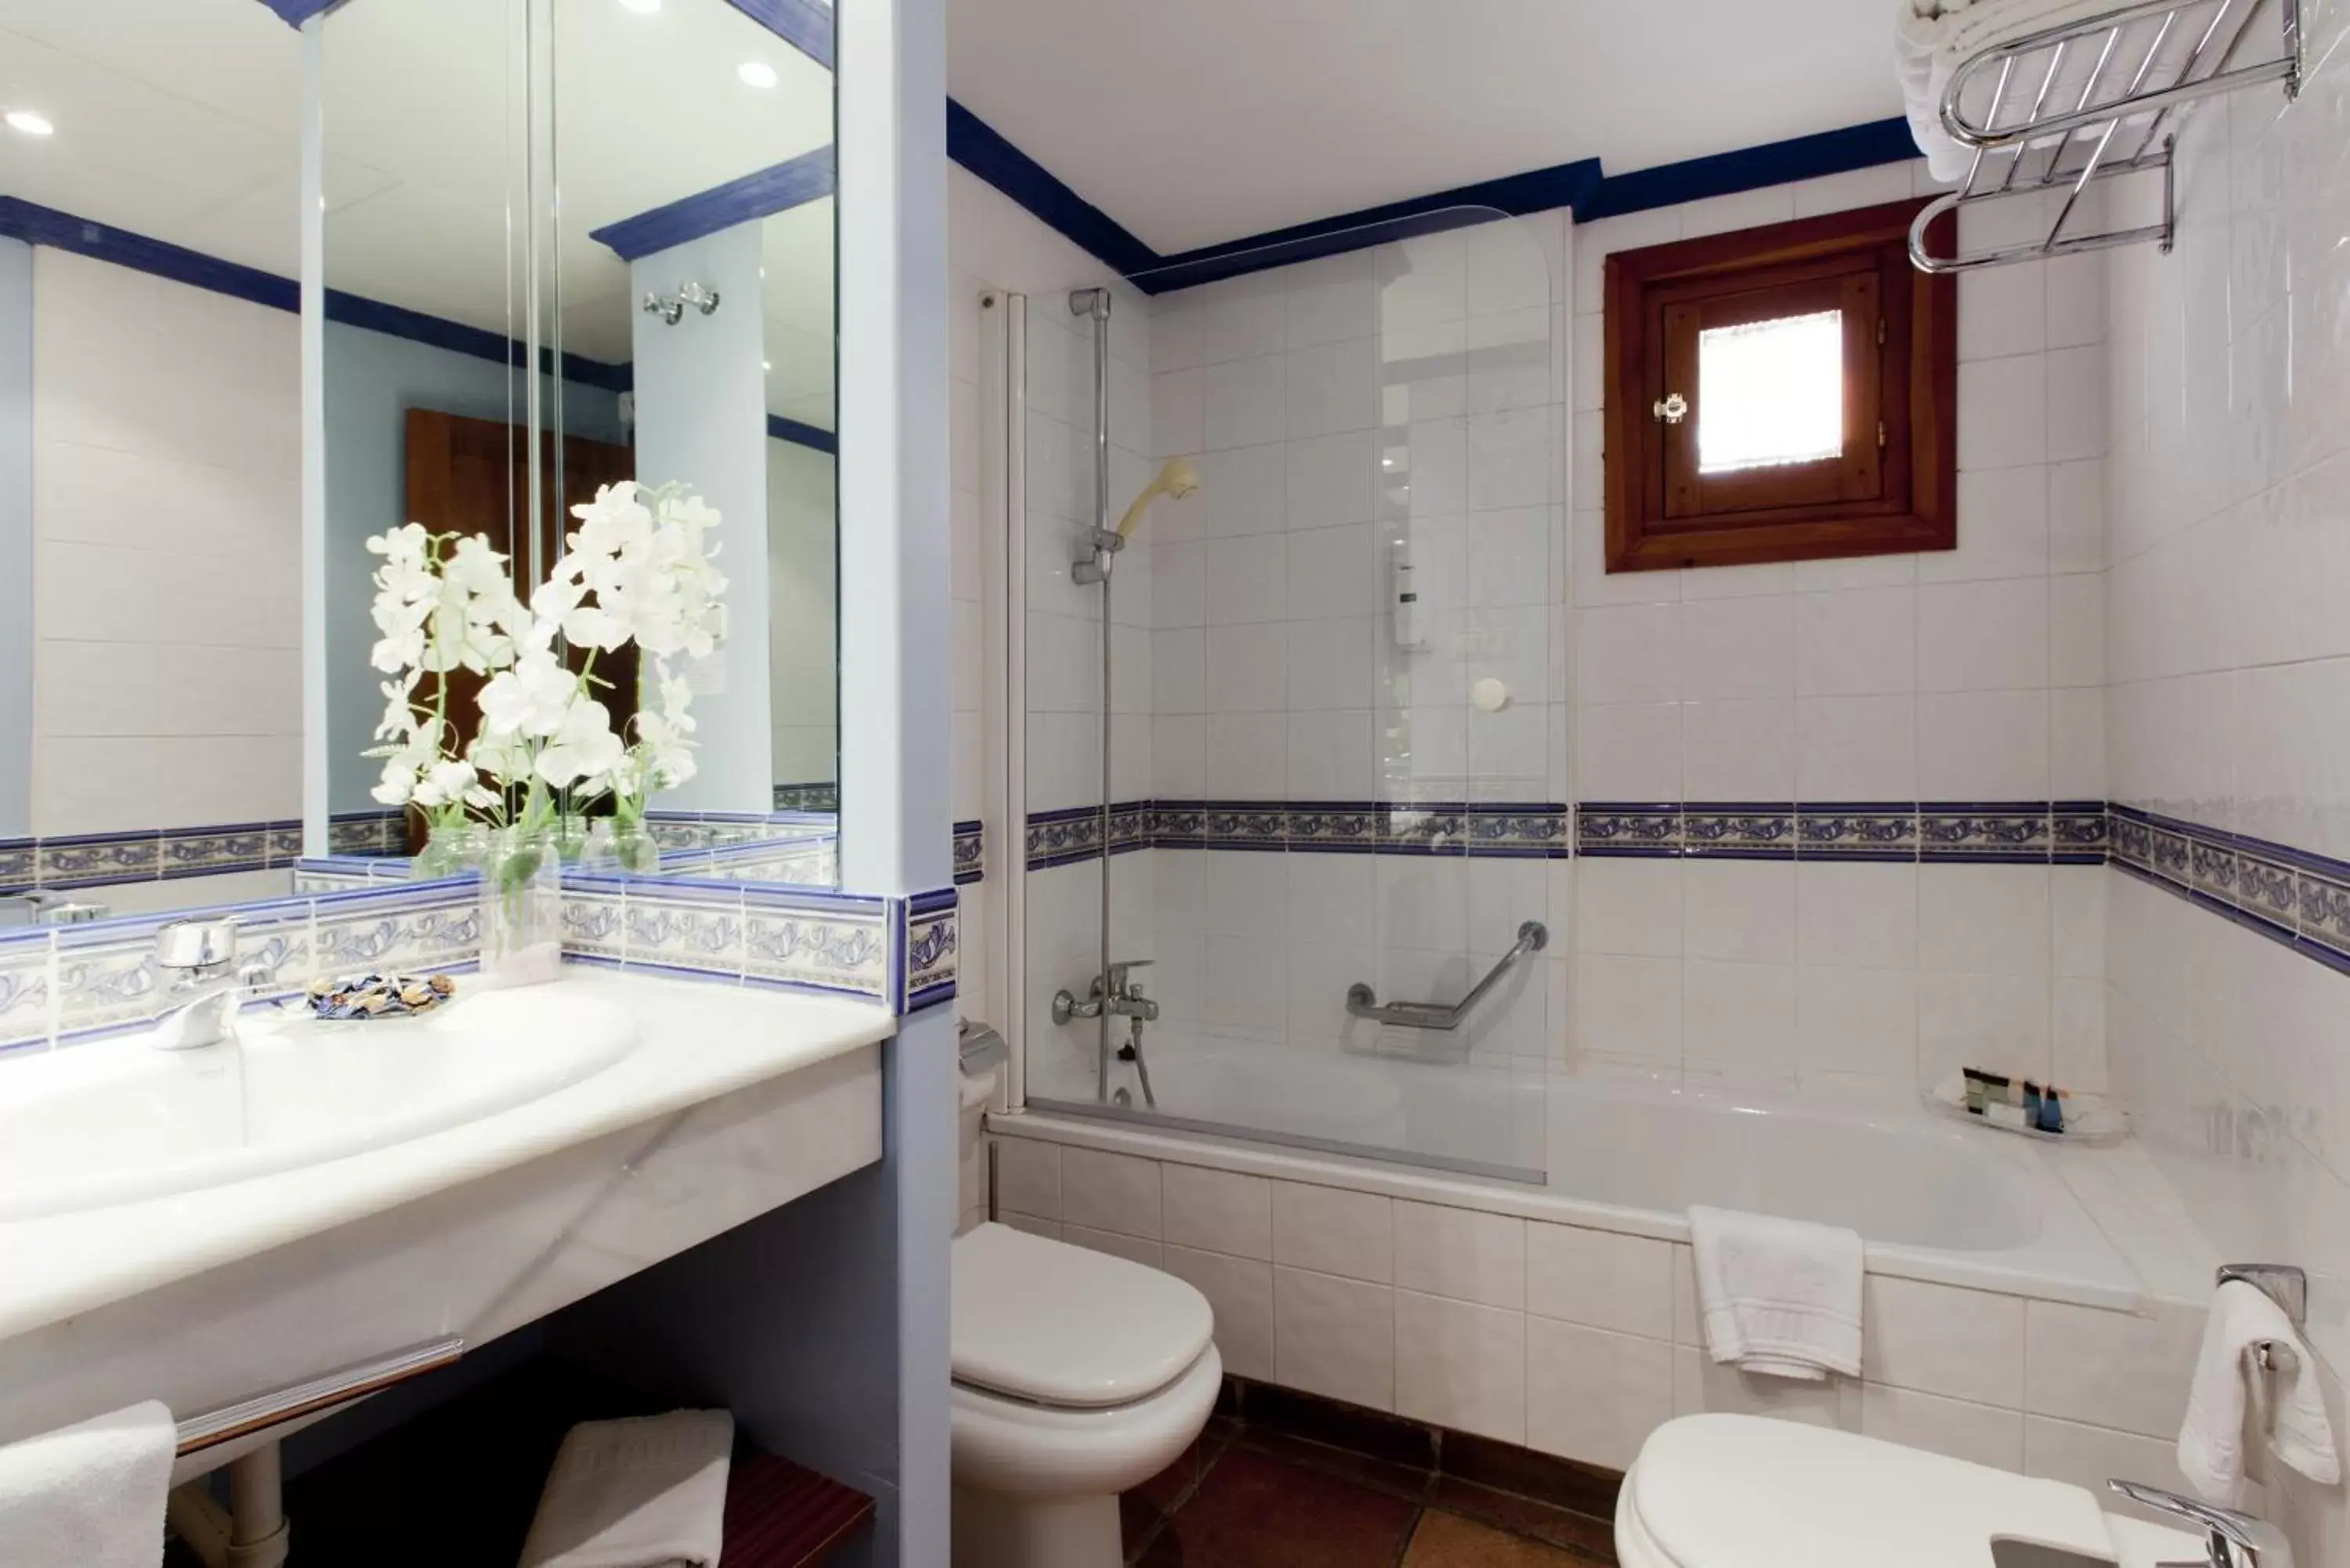 Bathroom in Hotel Casona de la Reyna